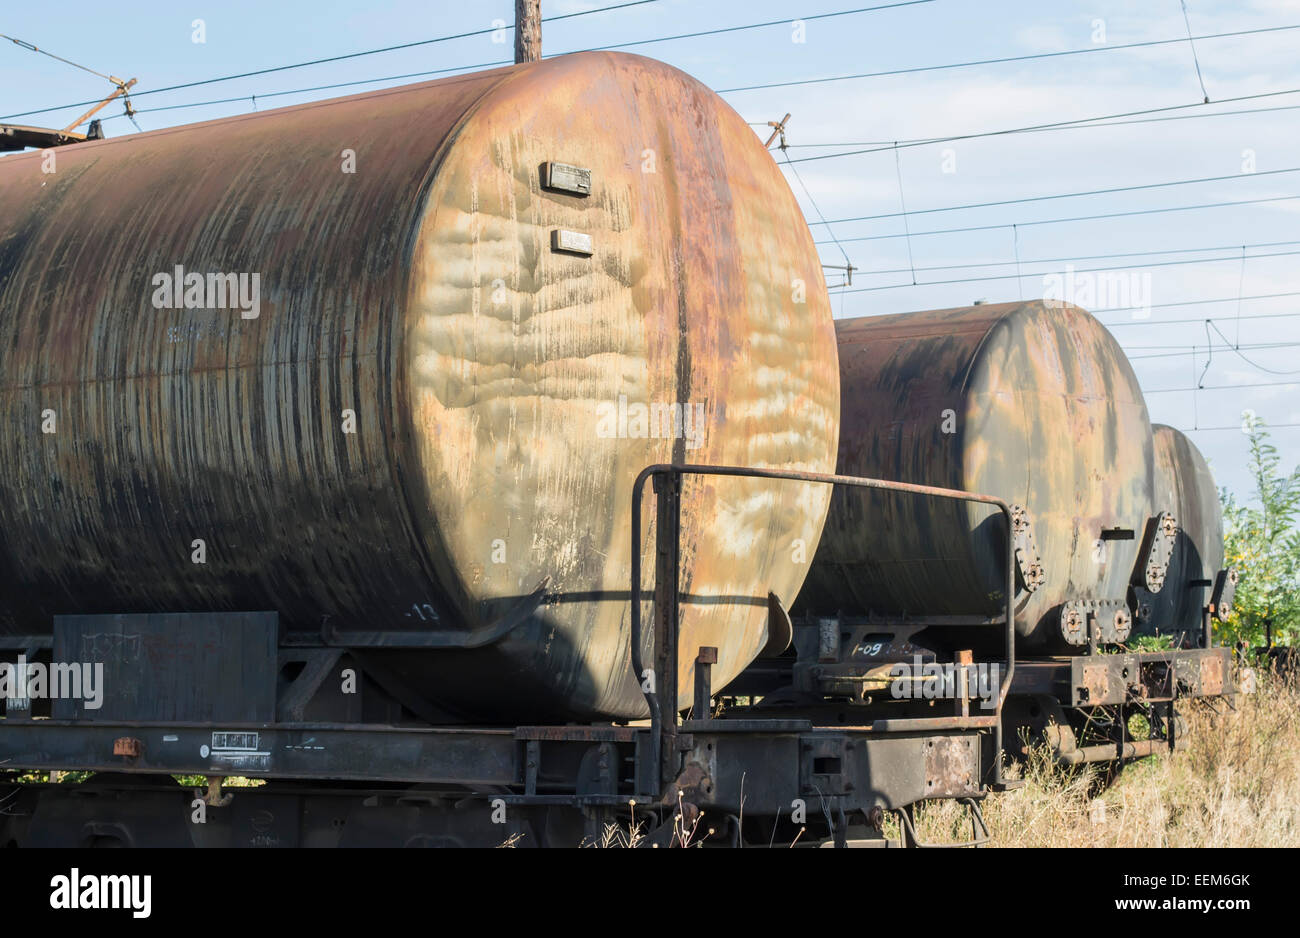 Righe di merci i carri cisterna, abbandonati sui binari della ferrovia di un ex piattaforma industriale Foto Stock